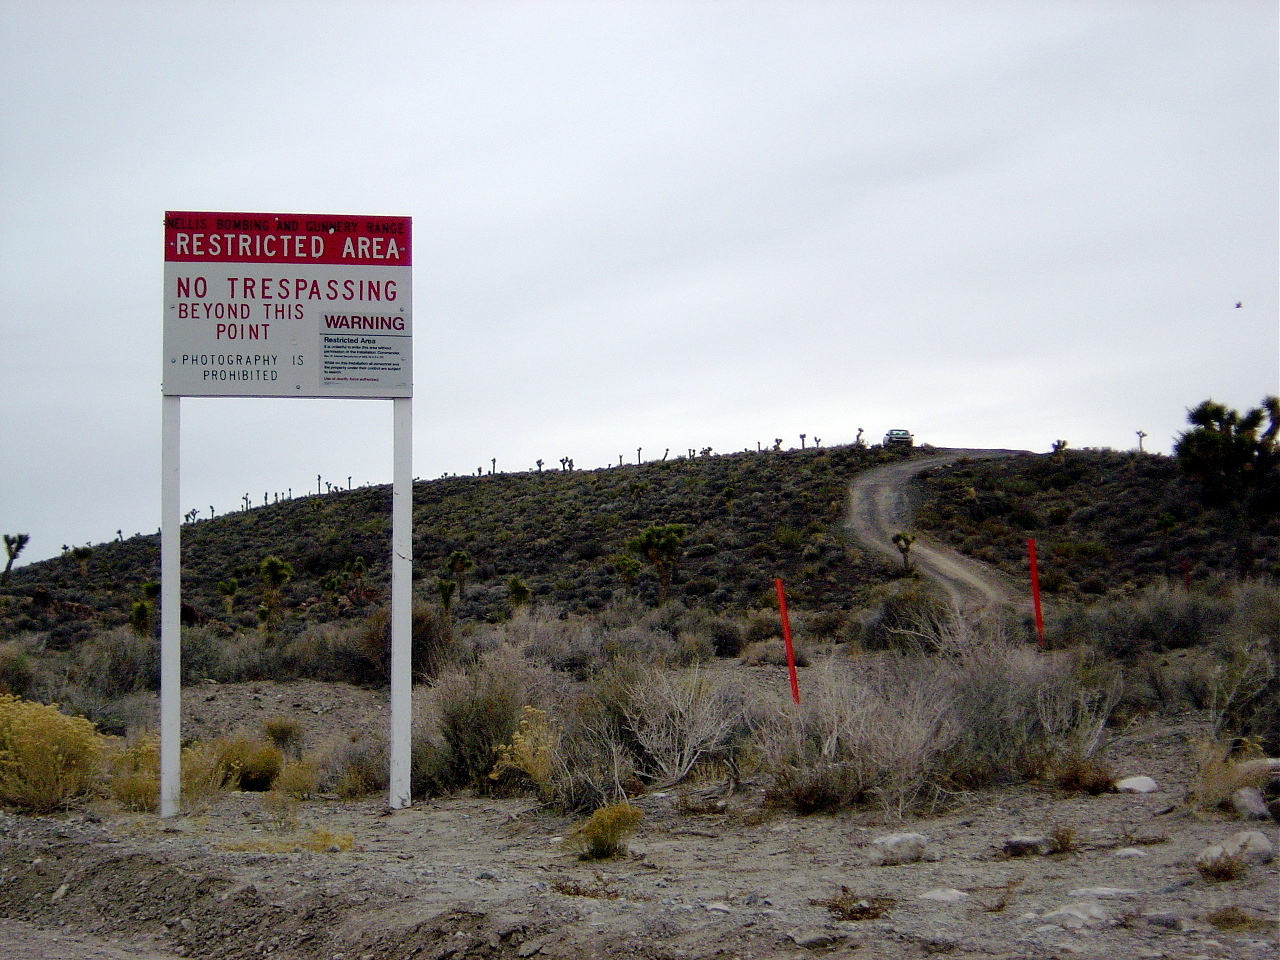 미국 네바다주에 있는 그룸 레이크 공군기지는 ‘51구역’이라는 이름으로 더 잘 알려져 있다. 음모론자들에게 51구역은 UFO와 외계인을 연구하는 특수 군사작전 지역이다. 51구역 경계지에 서 있는 민간인 통제 푯말. 위키피디아 제공